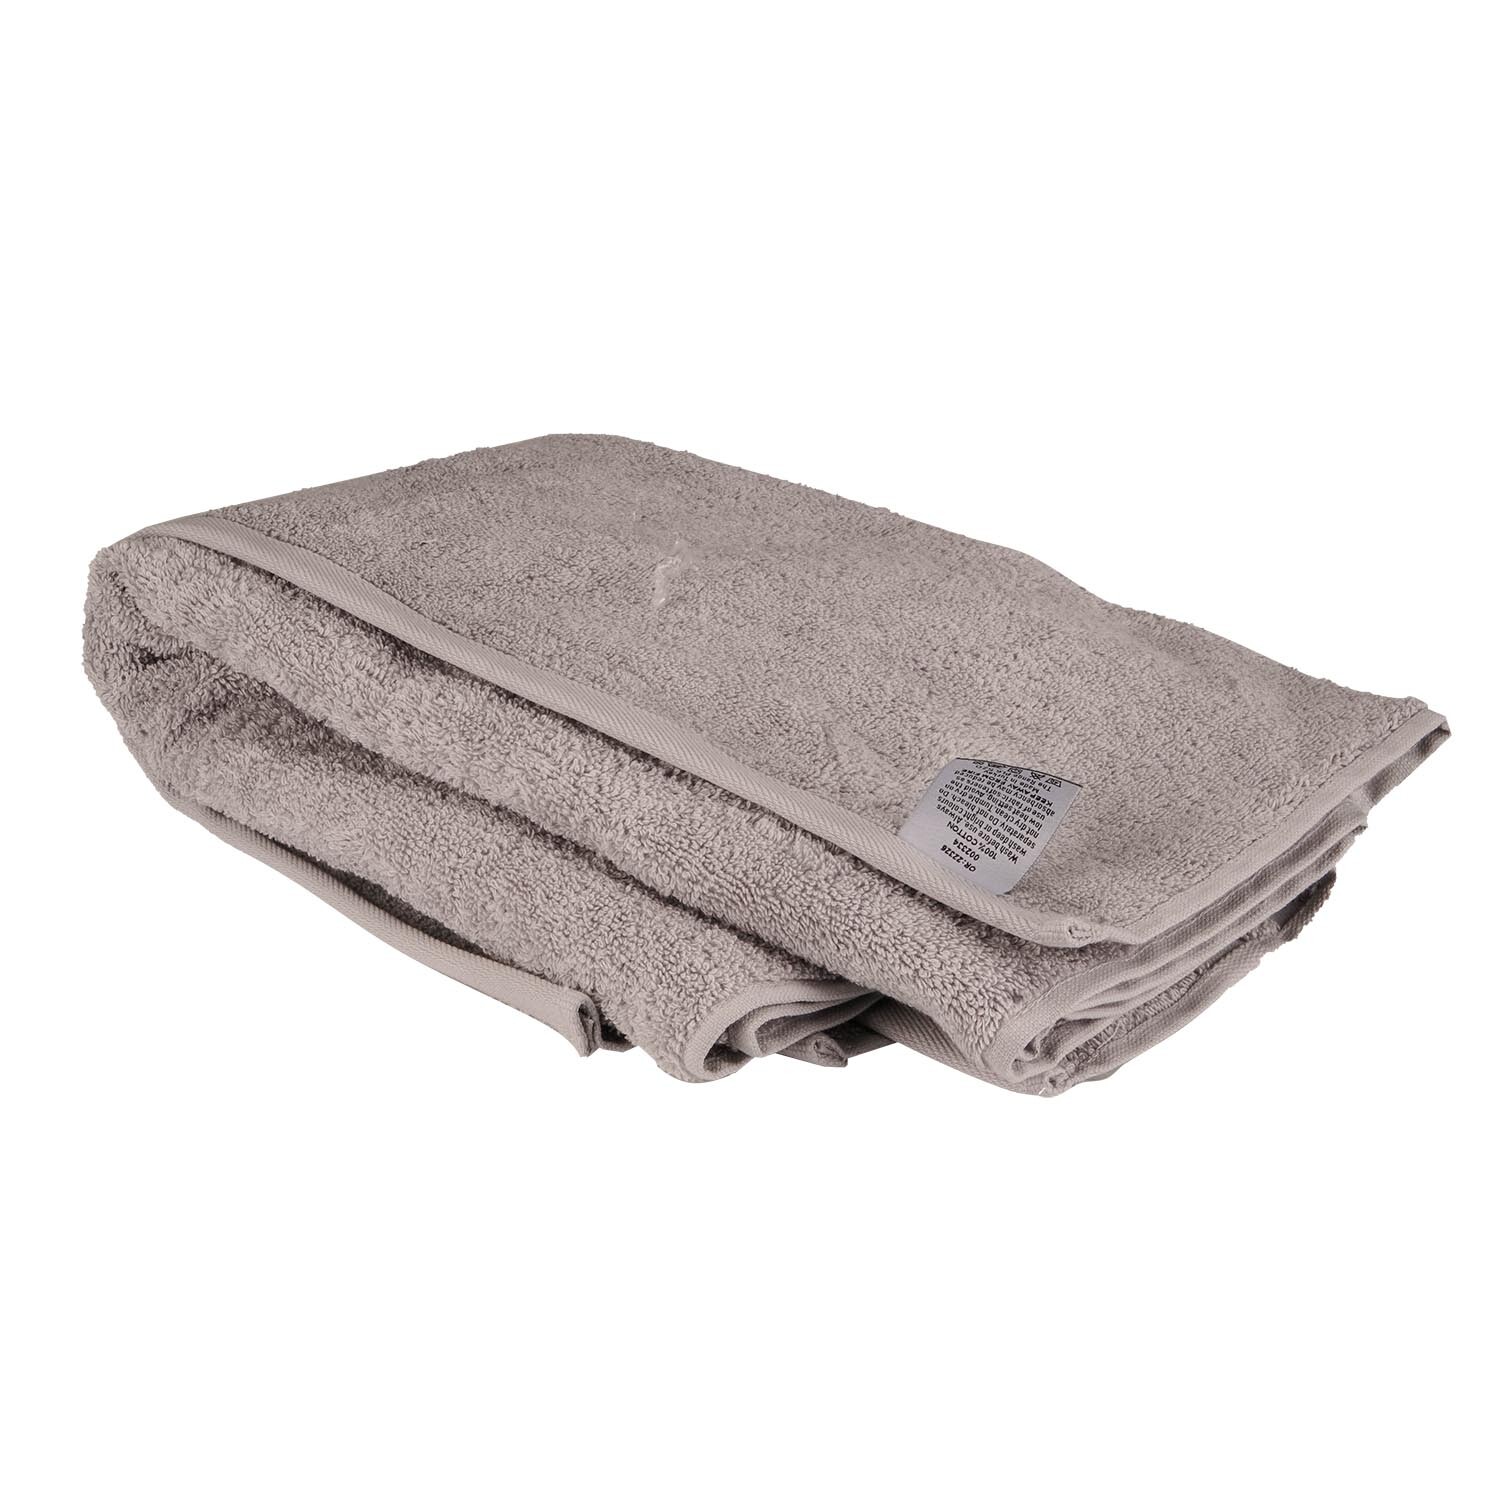 Divante Hand Towel  - Glacier Grey Image